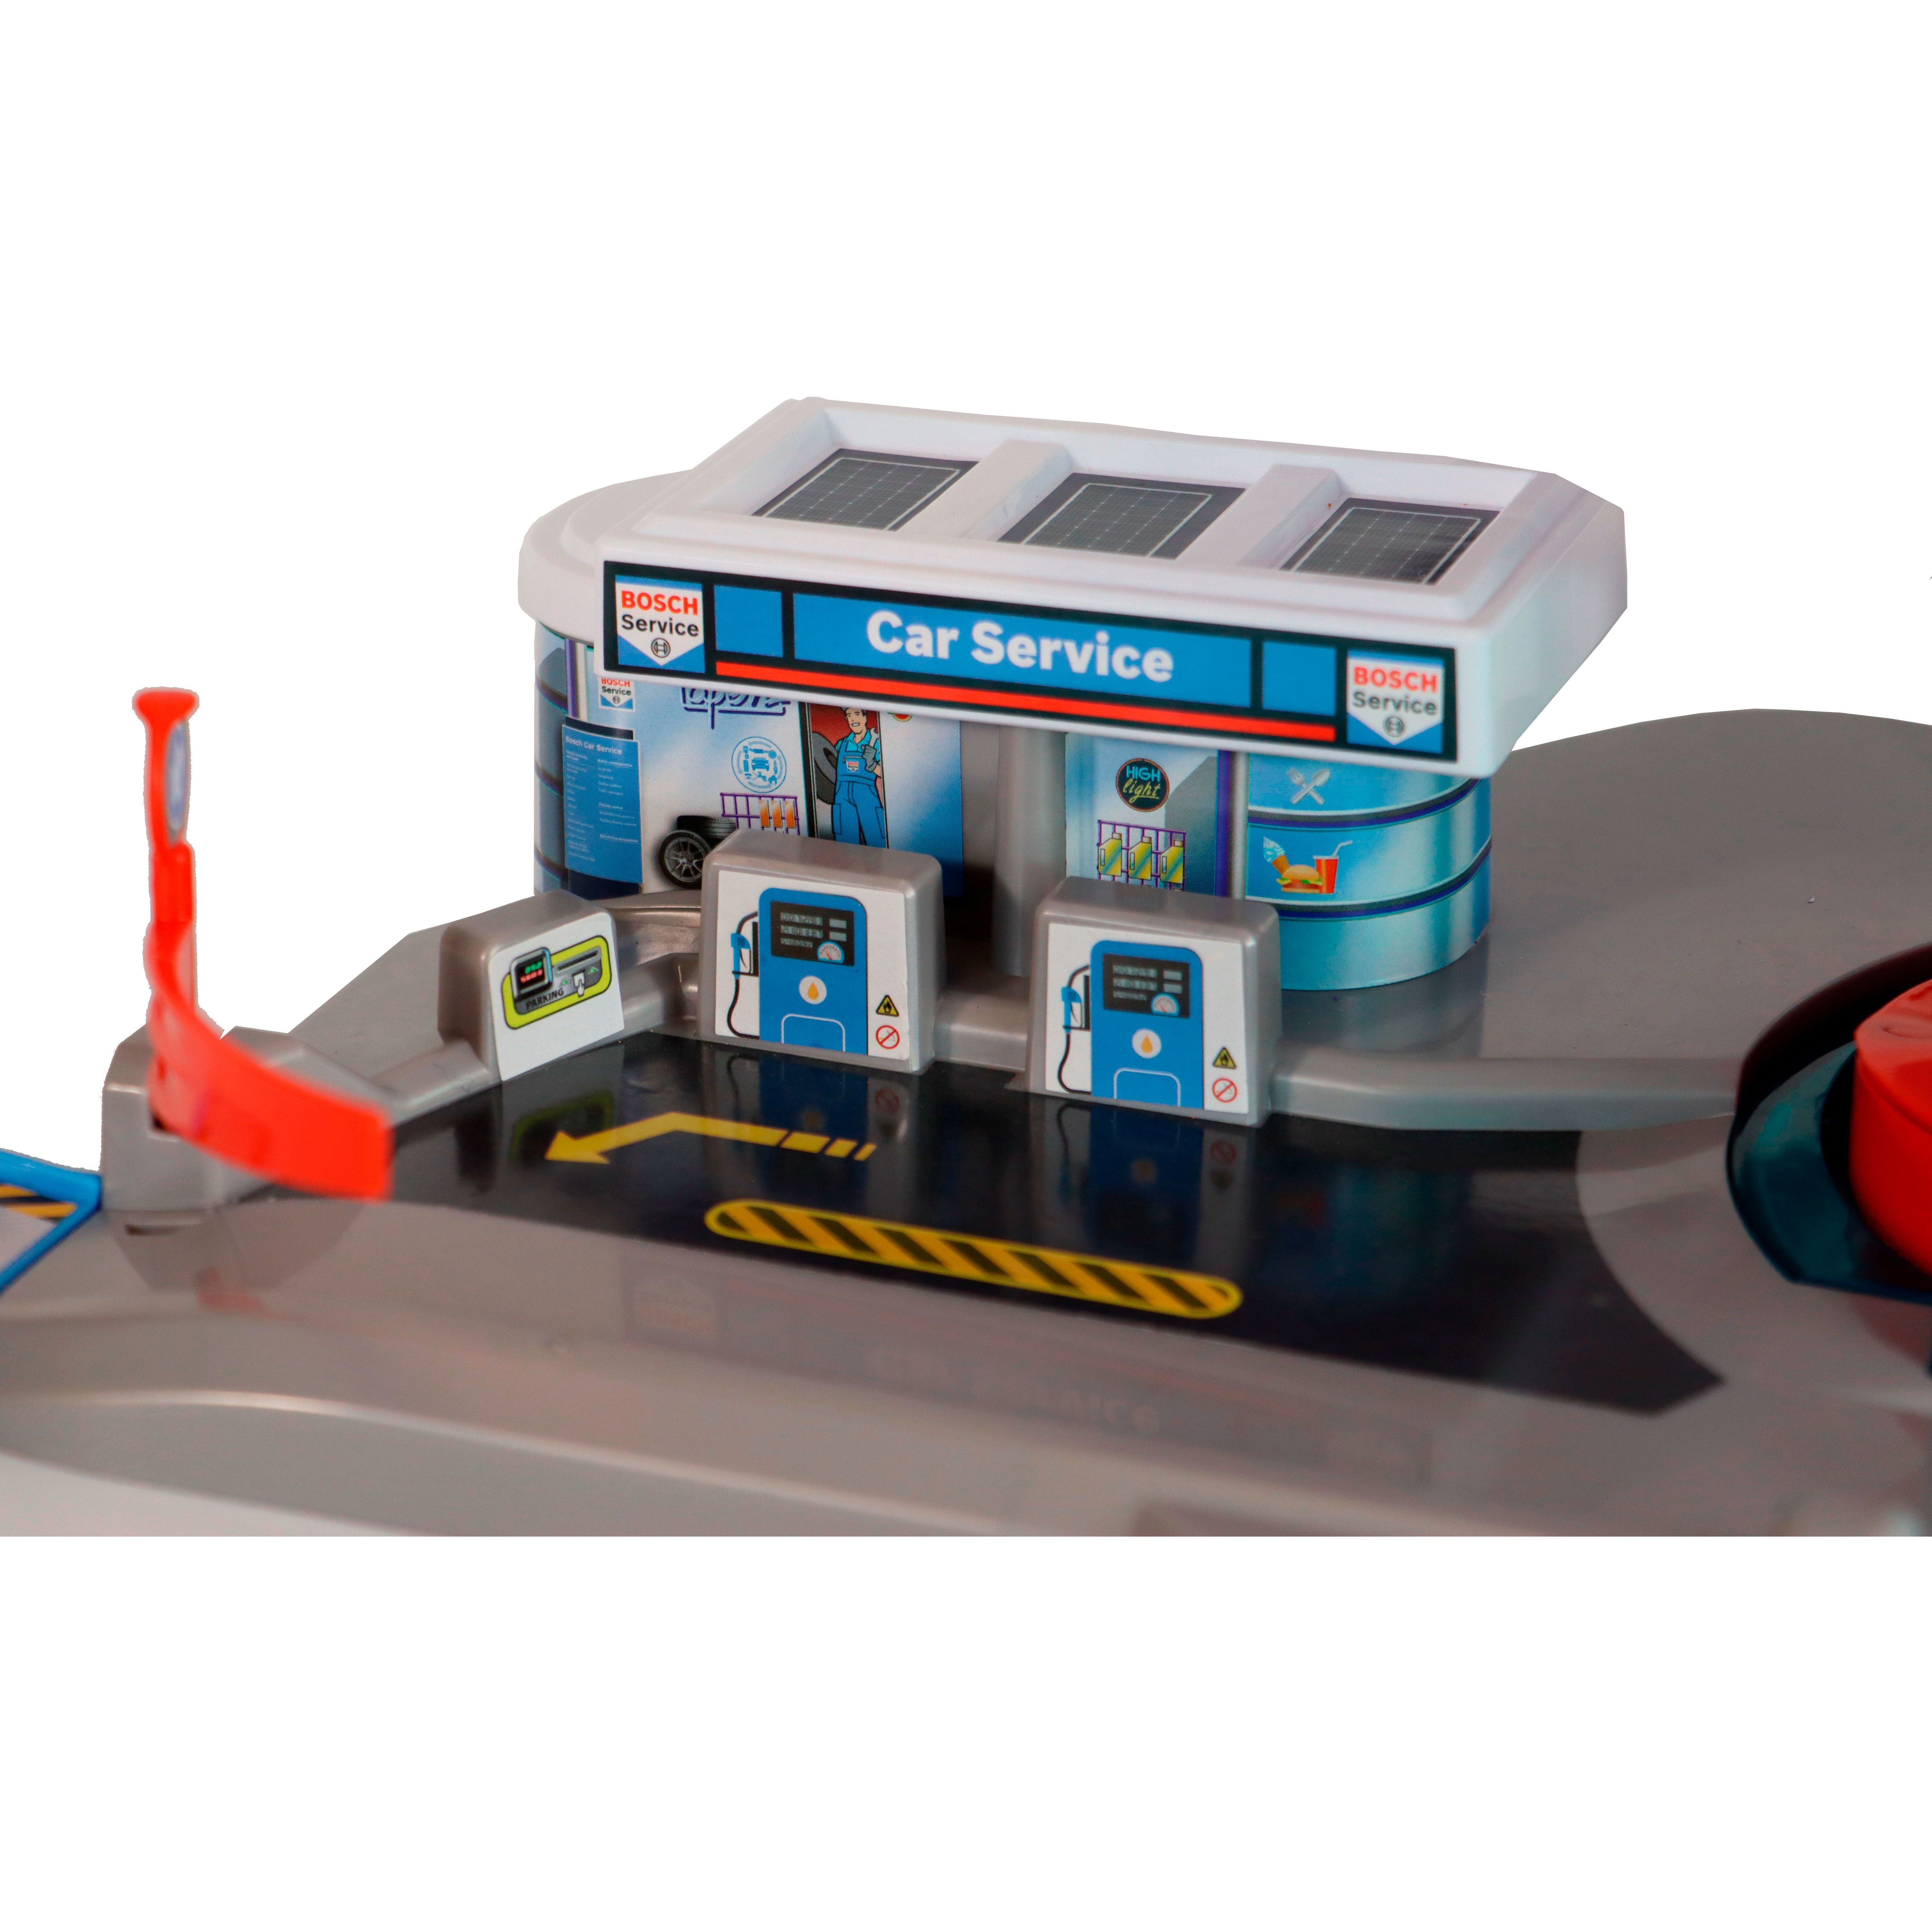 Іграшковий набір Bosch Mini гараж Бош Авто Сервіс інтерактивний з підсвіткою (2899) - фото 2